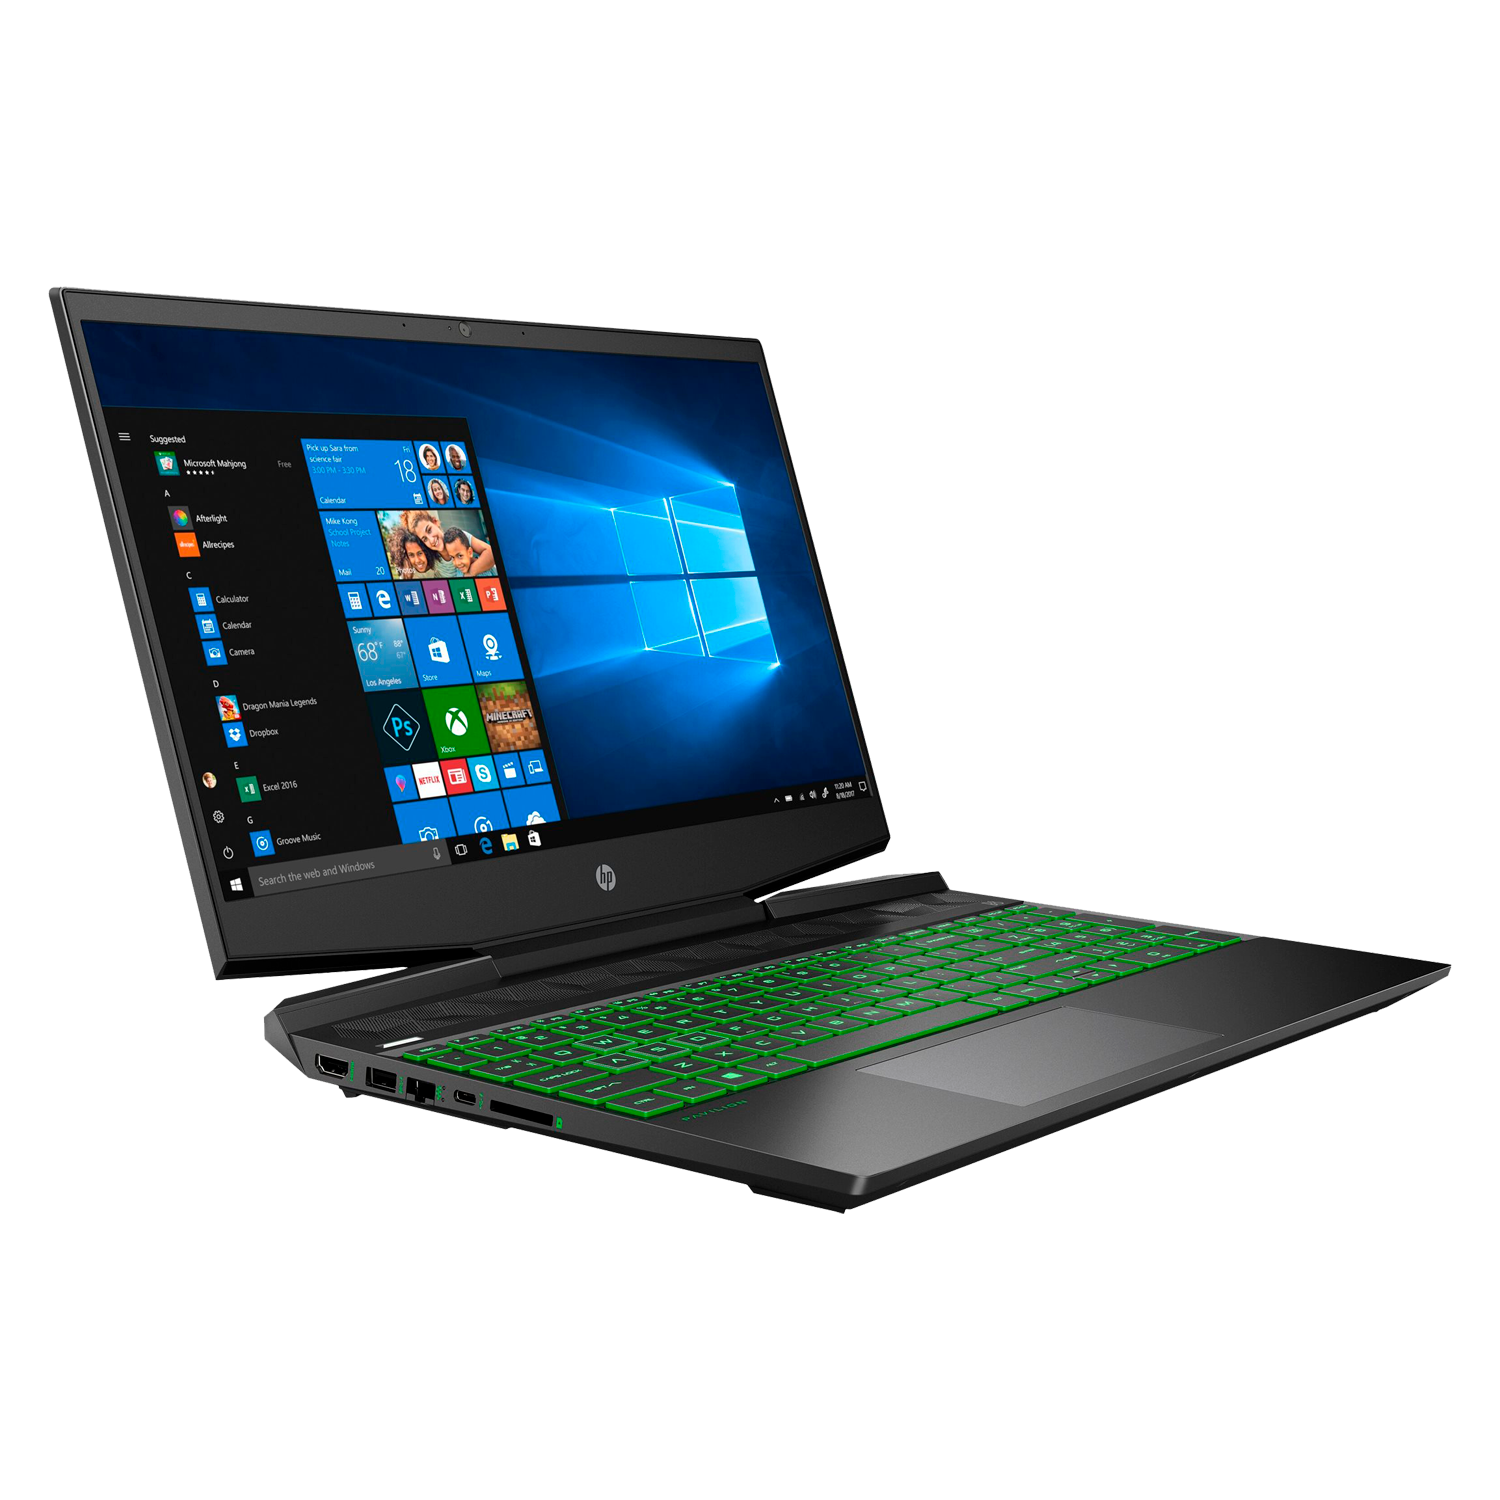 Notebook HP HP-DK1045TG I5-10300H 8GB / 256GB SSD / Tela 15.6'' / GTX 1650 4GB